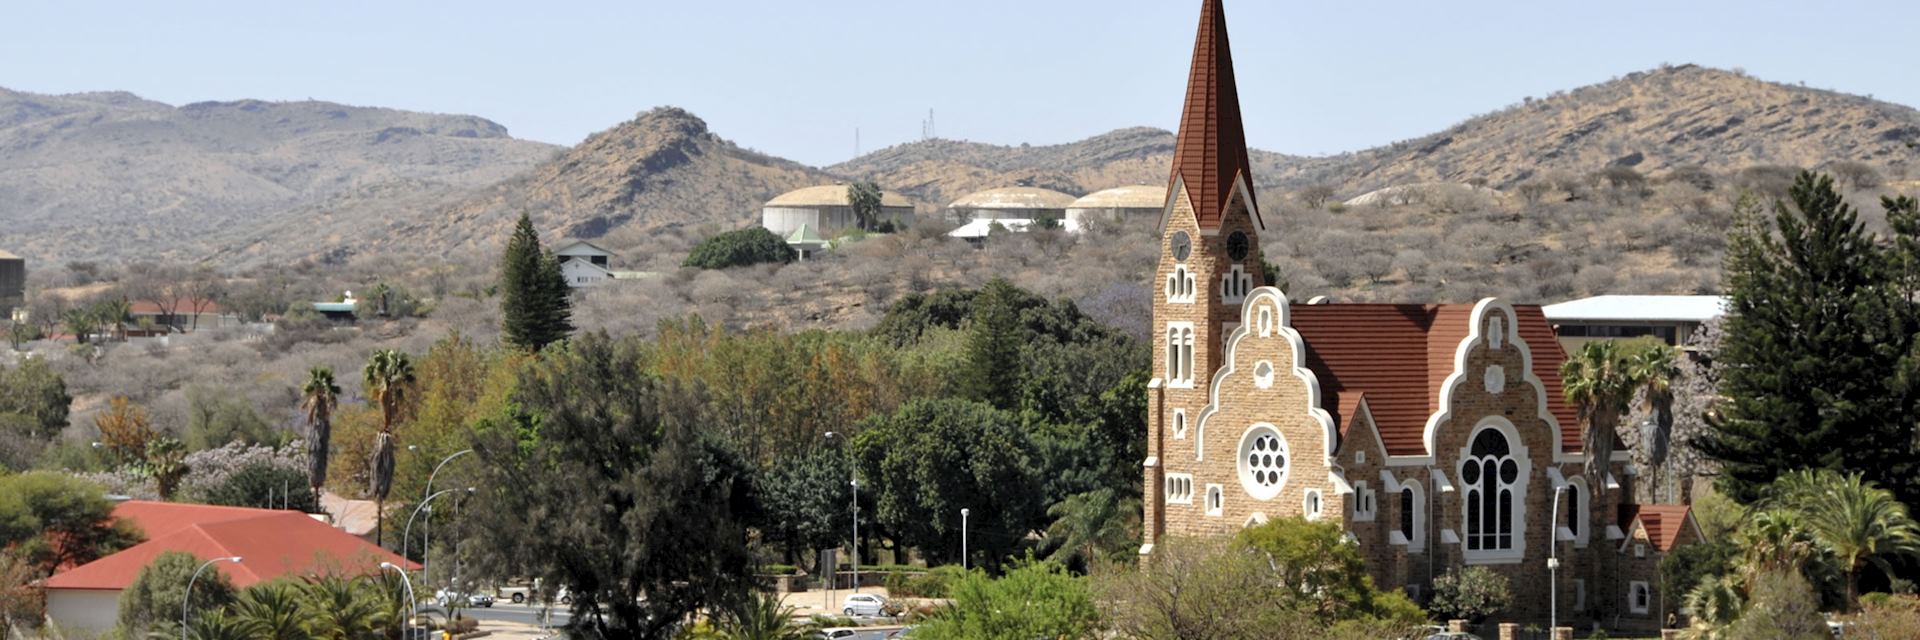 Church in Windhoek